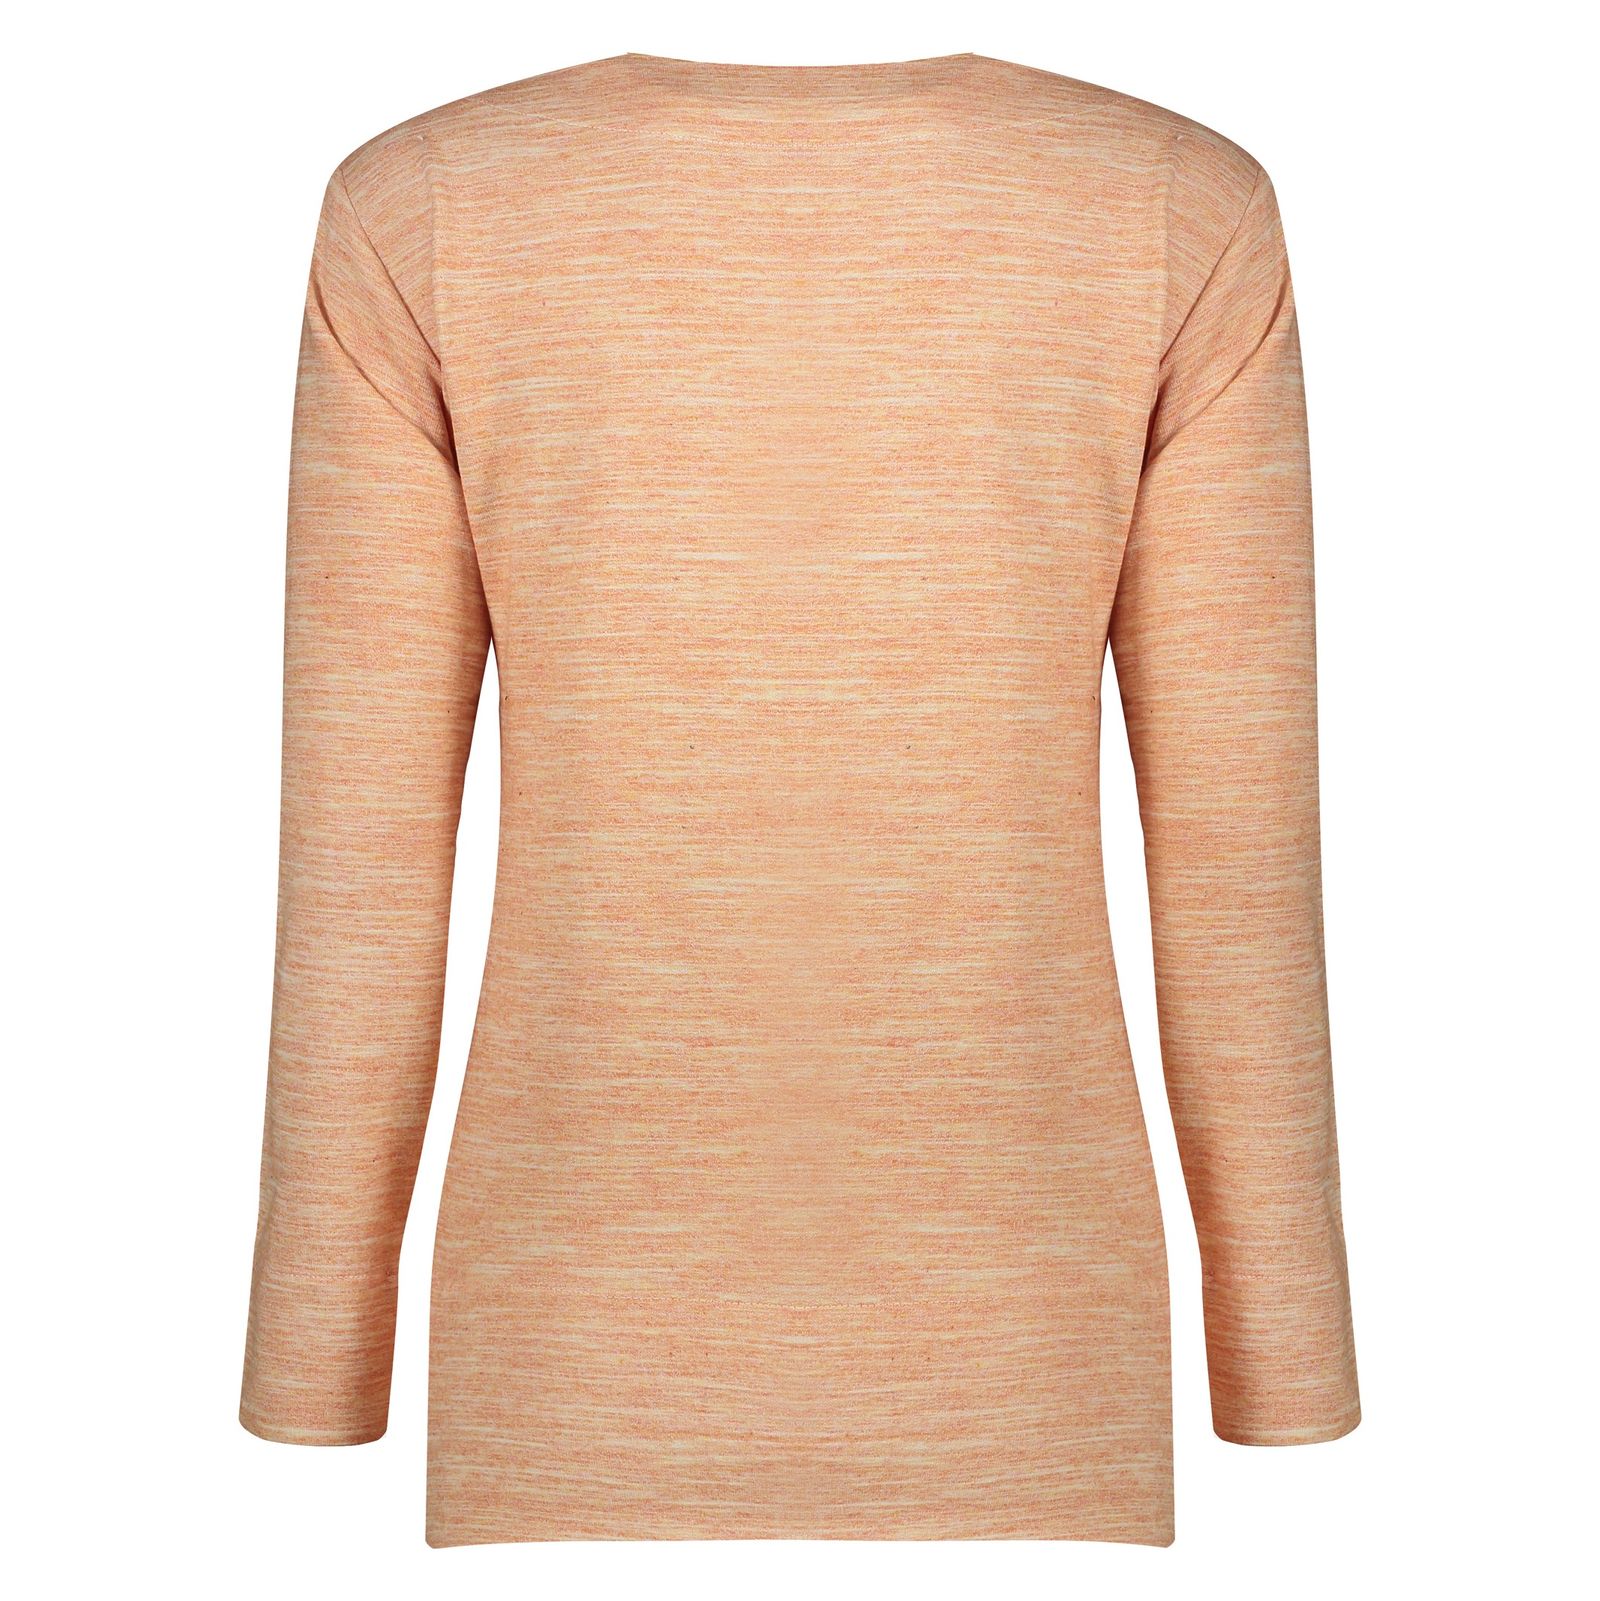 تی شرت زنانه گارودی مدل 1003107023-16 - نارنجی - 4